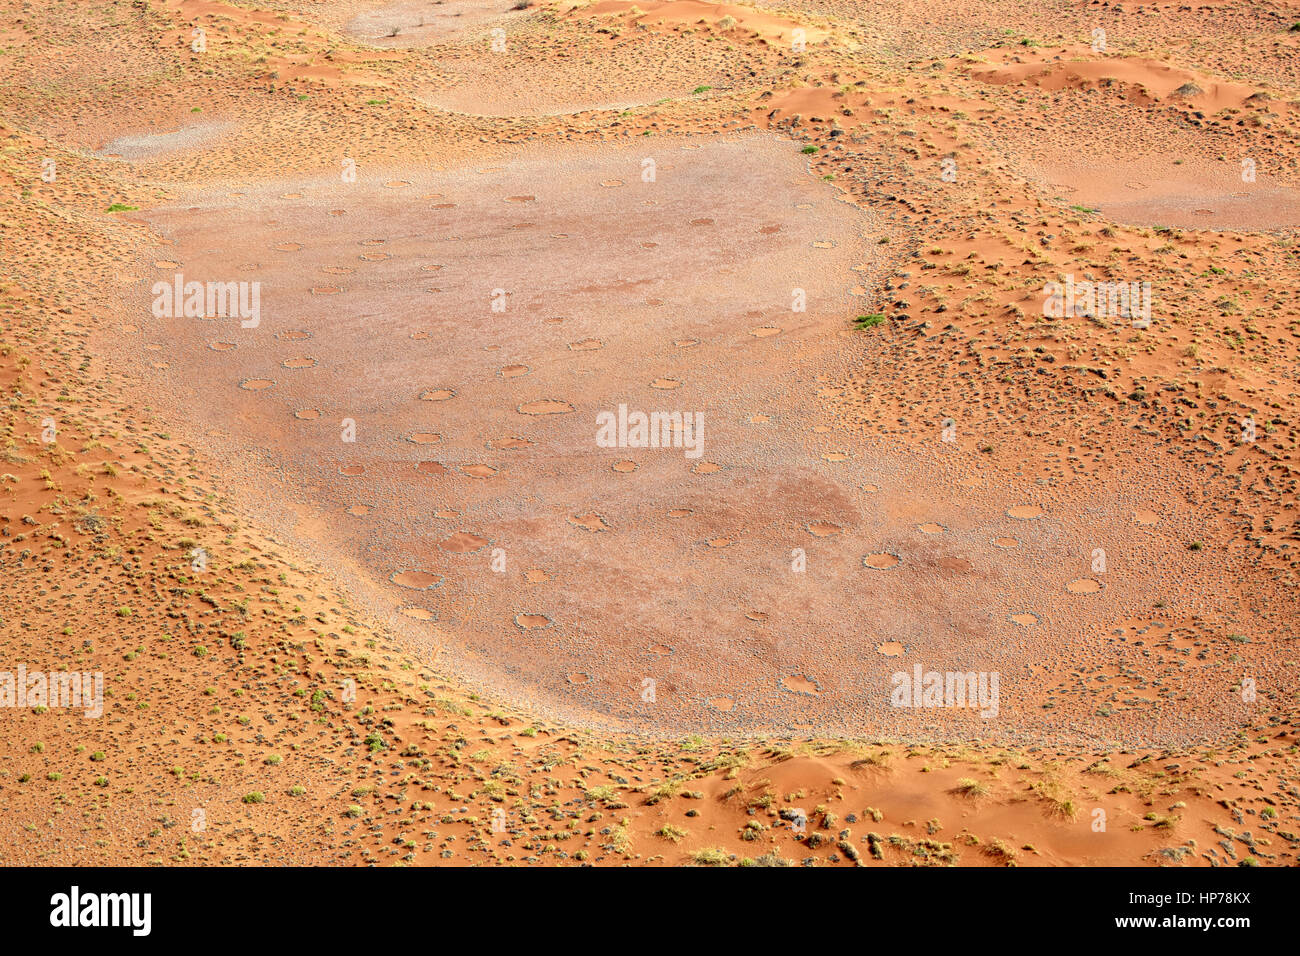 Les cercles de fées, Sesriem, Sossusvlei, Namib-Naukluft National Park, Namibie, Afrique Banque D'Images